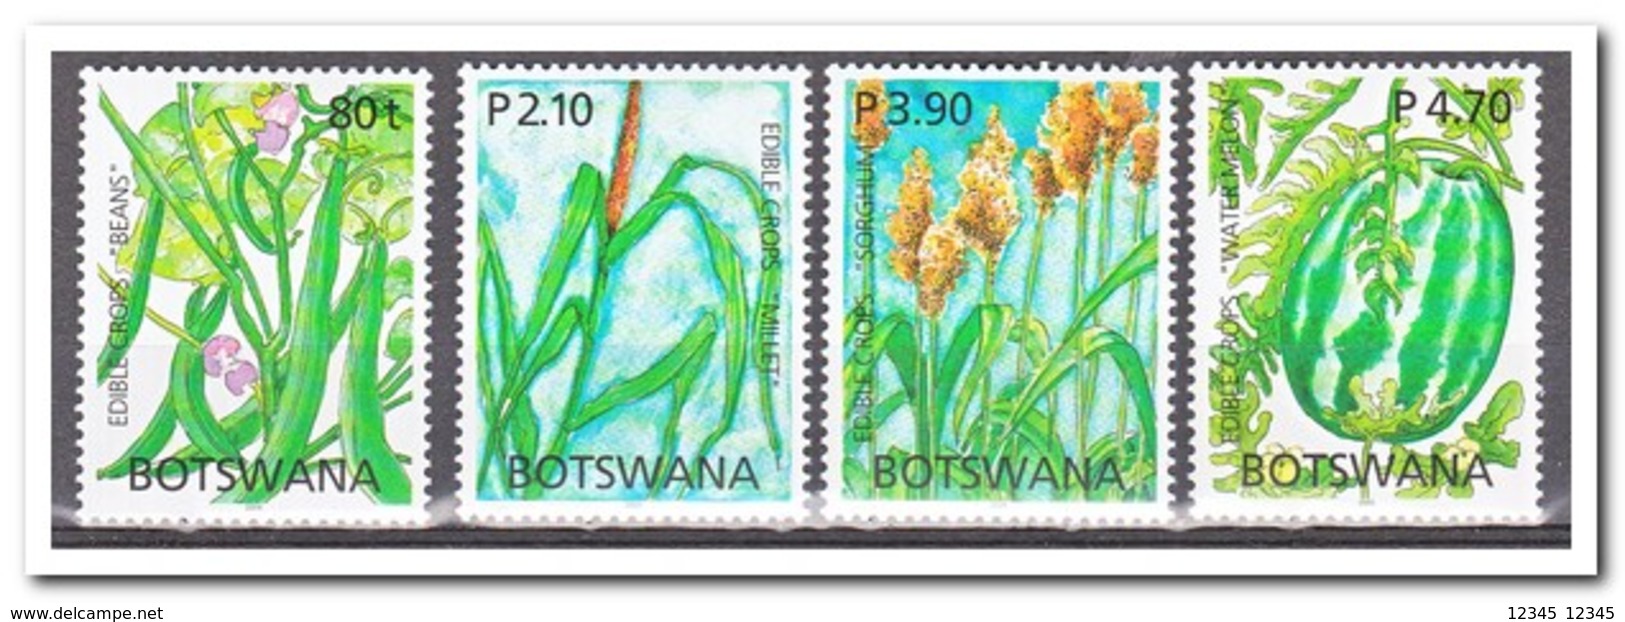 Botswana 2005, Postfris MNH, Plants, Fruit - Botswana (1966-...)